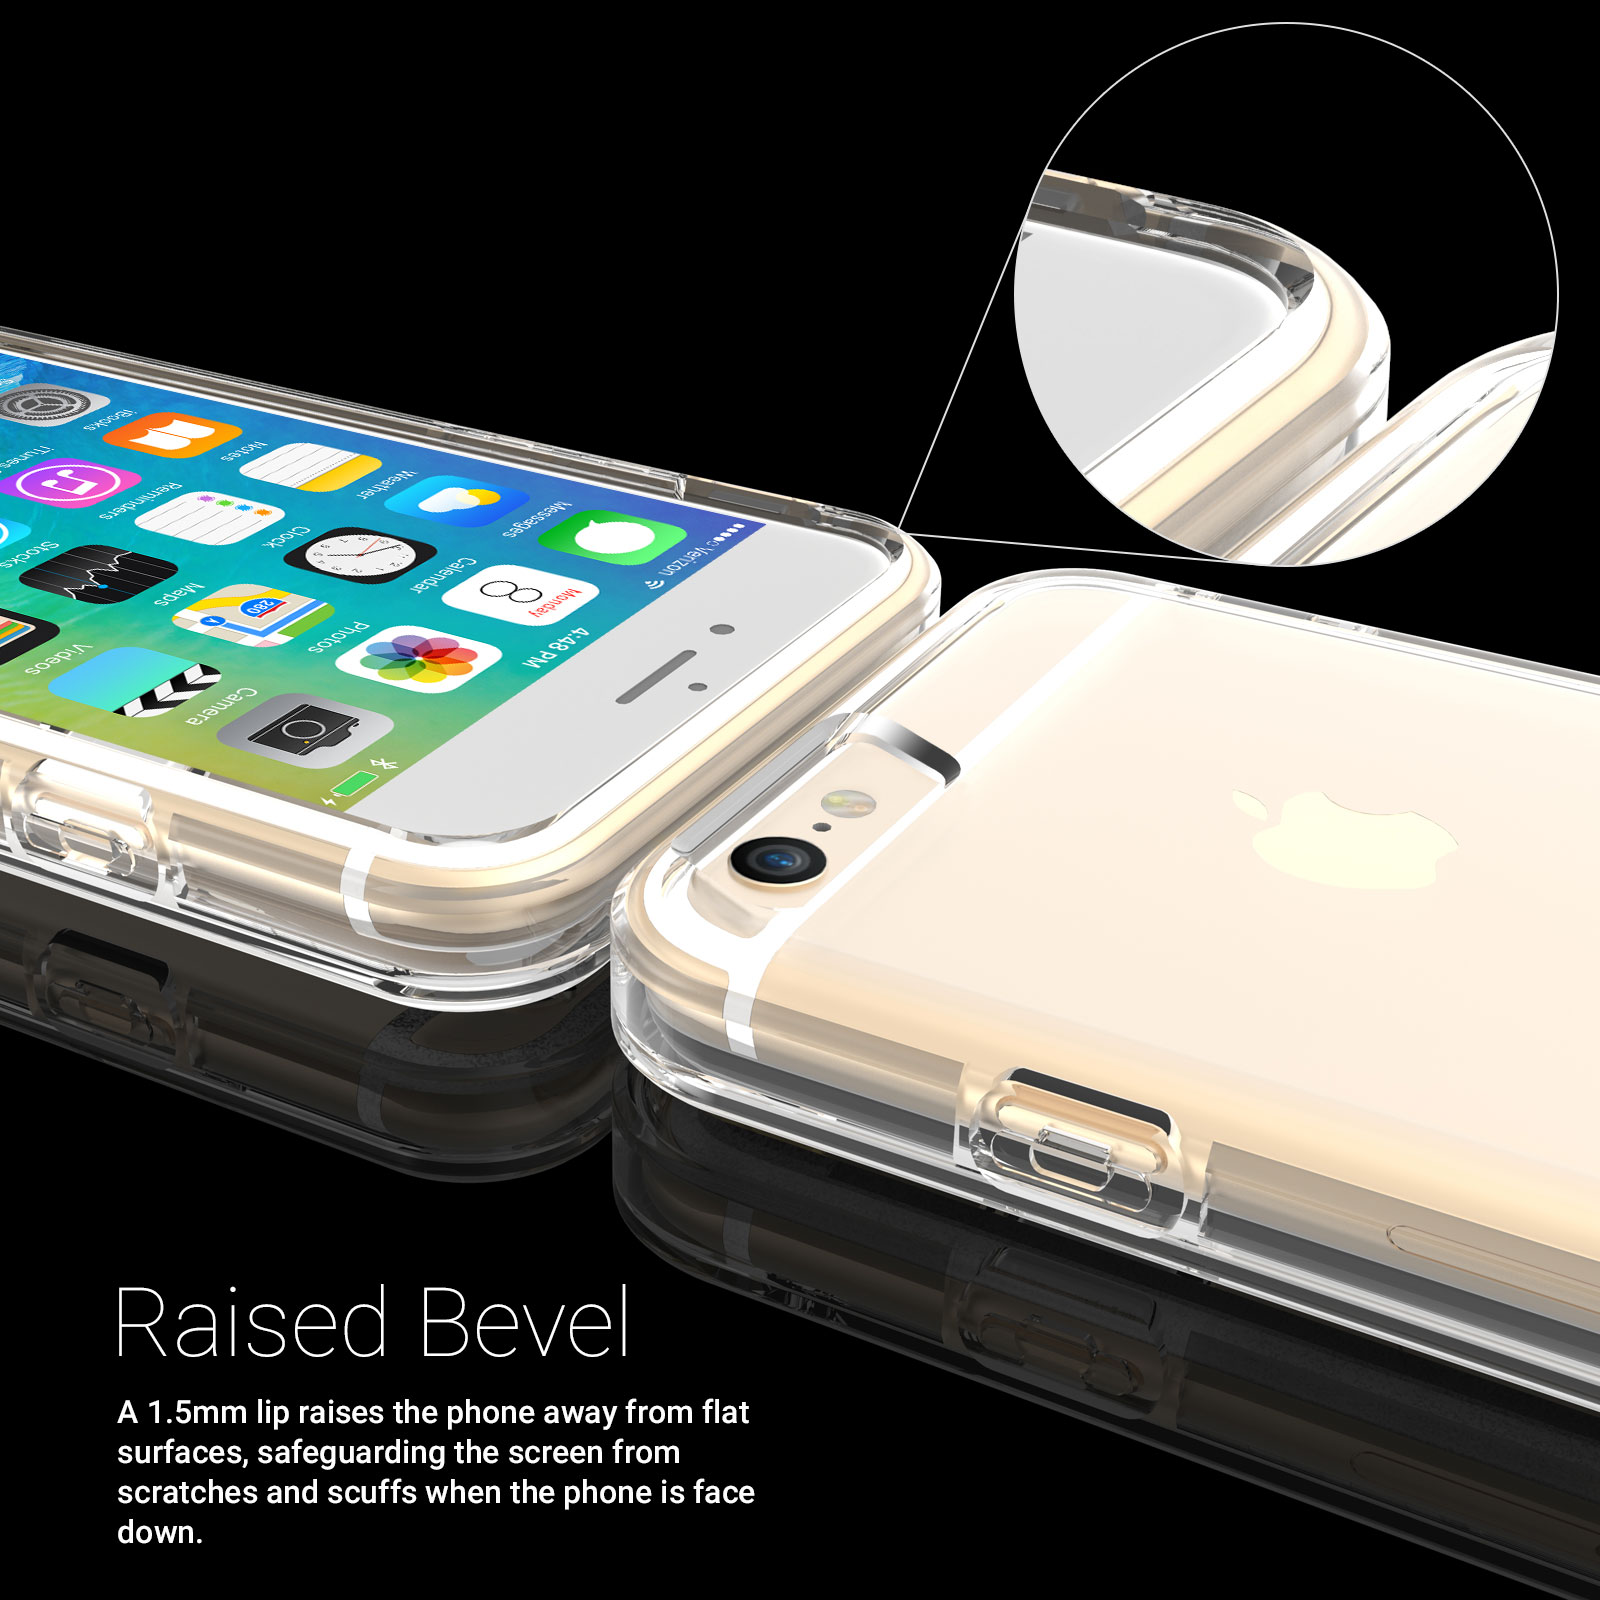 Caseflex iPhone 6 / 6s Reinforced TPU Gel Case - Black